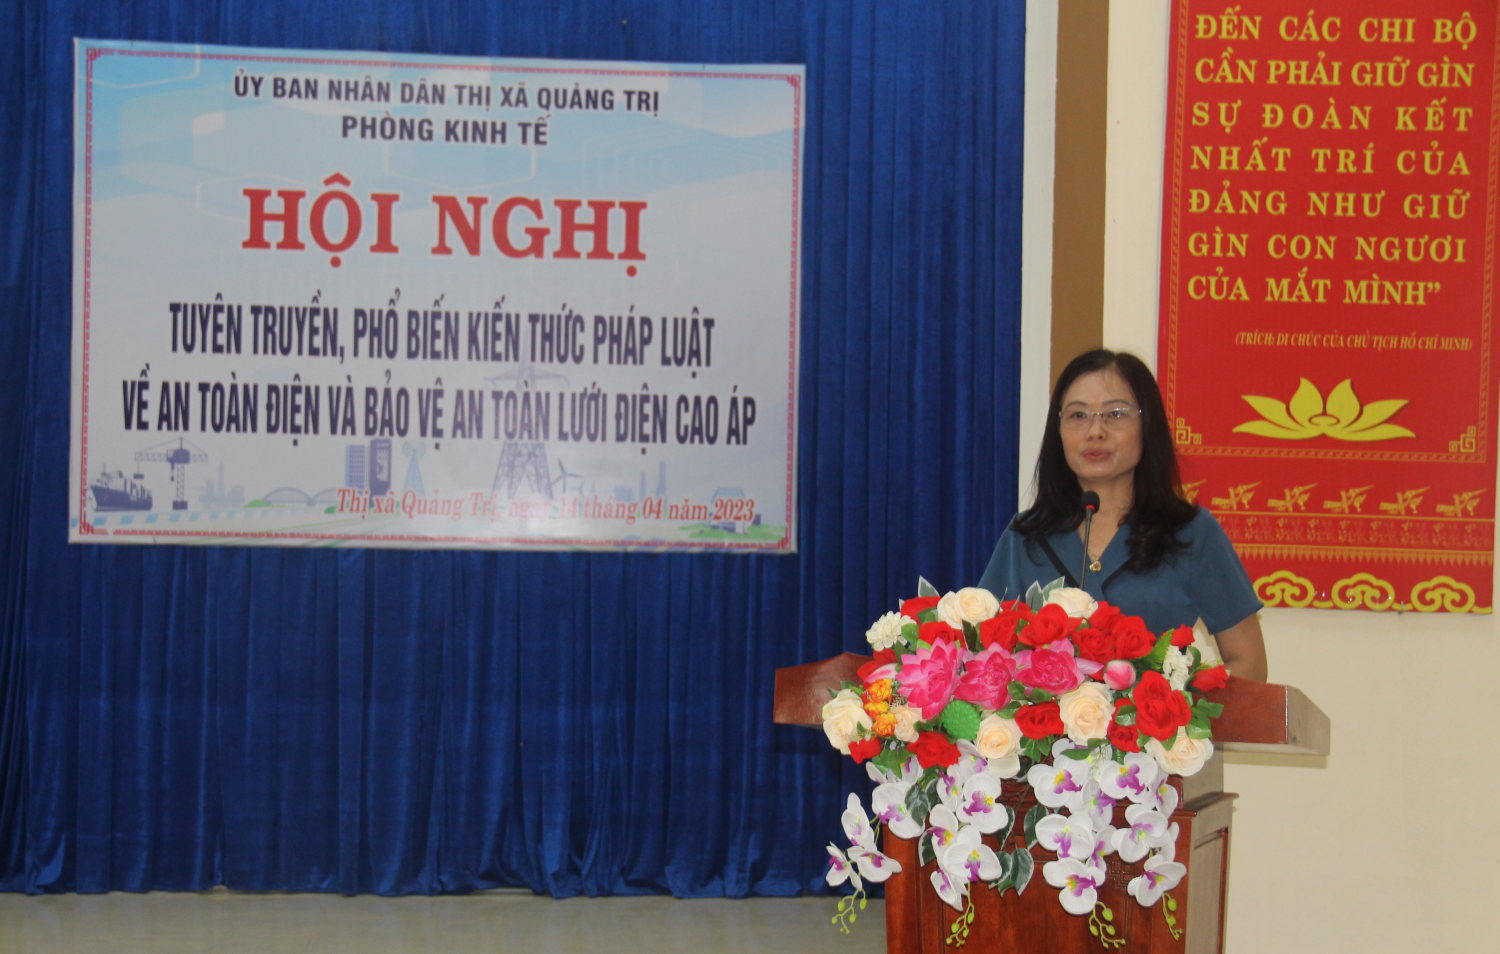 Bà Nguyễn Thị Trác Diễm, Trưởng phòng Kinh tế Thị xã Quảng Trị phát biểu khai mạc Hội nghị